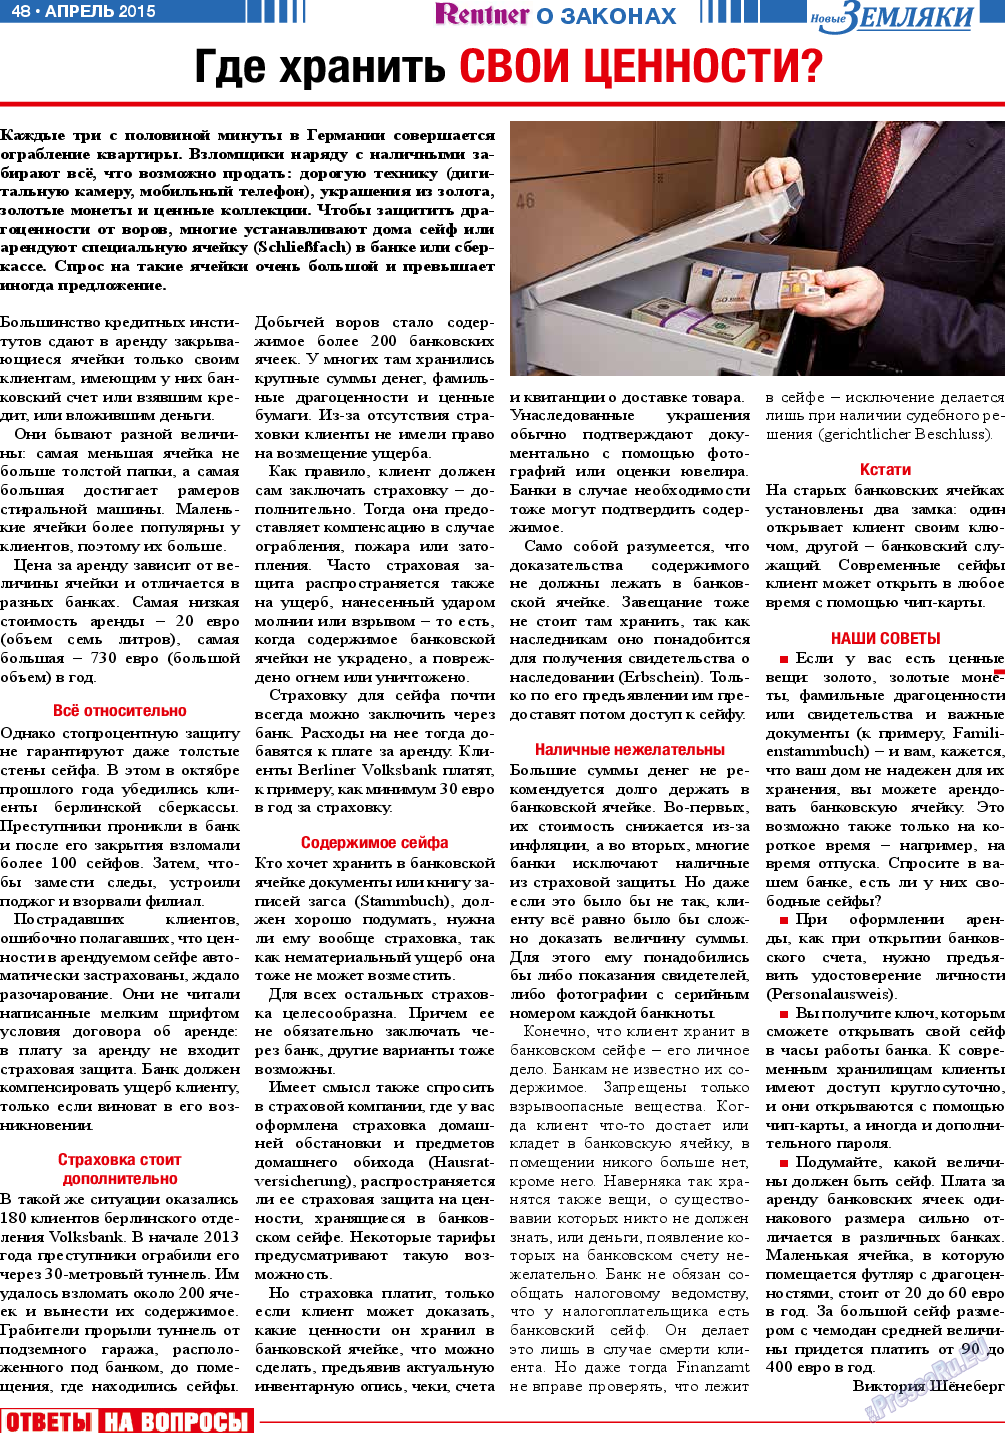 Новые Земляки (газета). 2015 год, номер 4, стр. 48